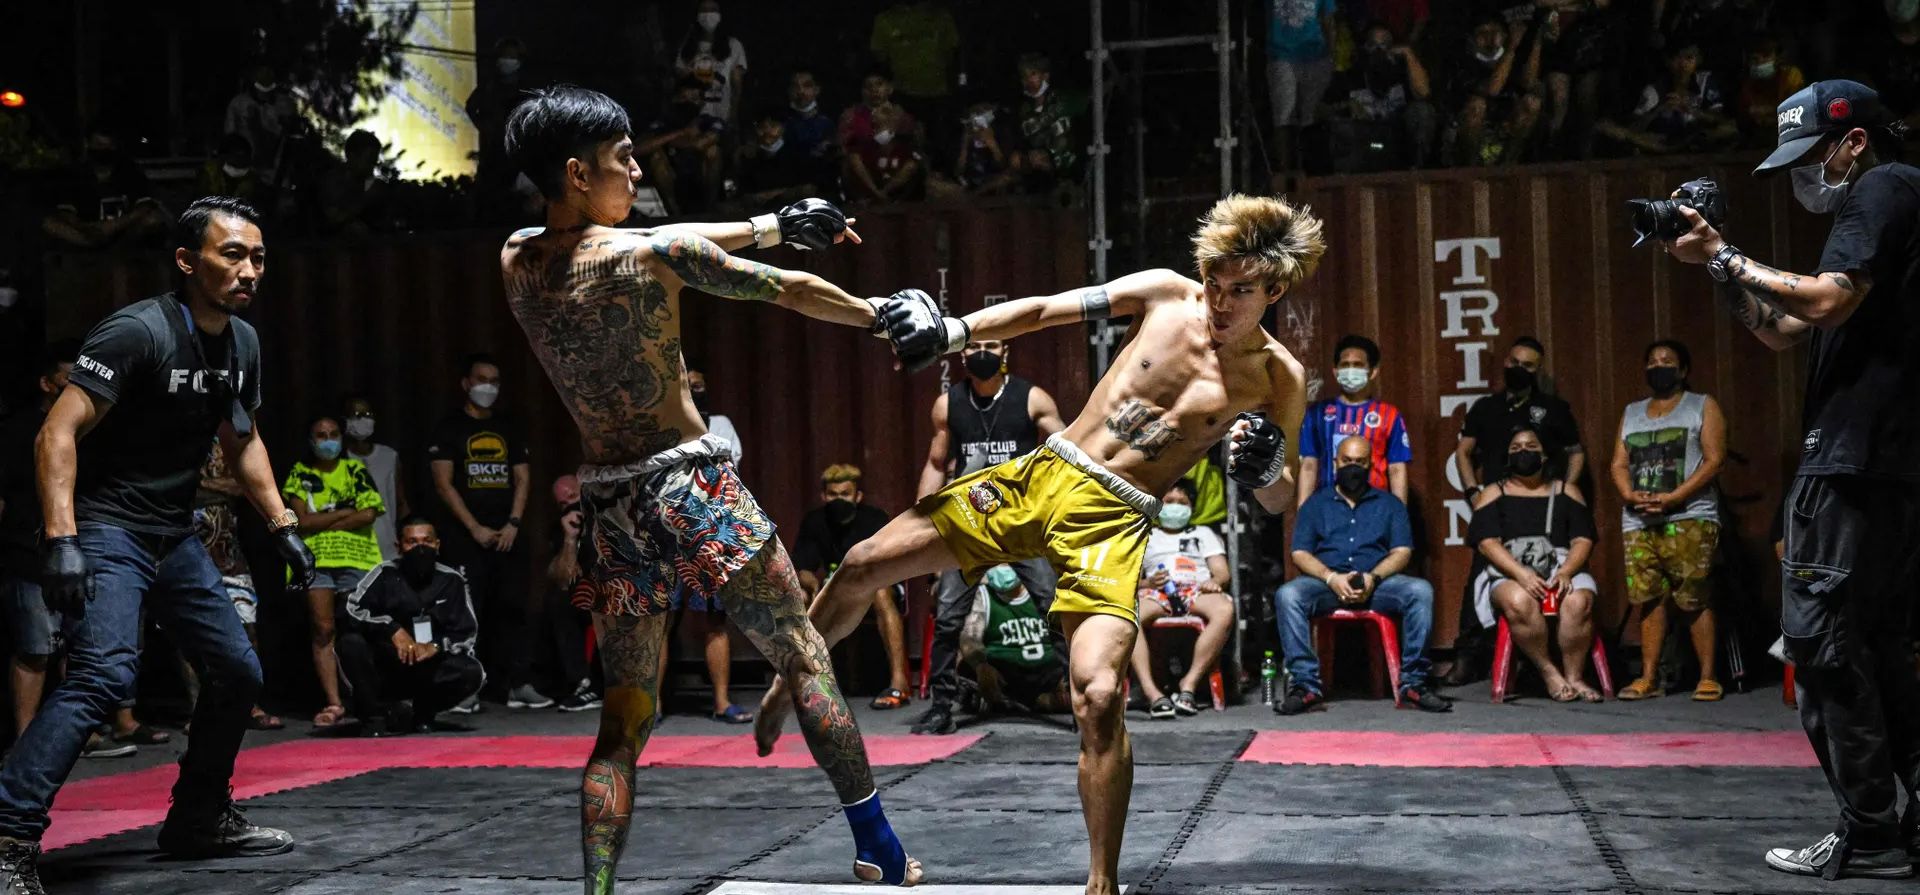 Combatientes de Muay thai en un evento del Fight Club Thailand en un estacionamiento en el distrito de Klong Toey de Bangkok. Fotografía: Lillian Suwanrumpha/AFP/Getty Images